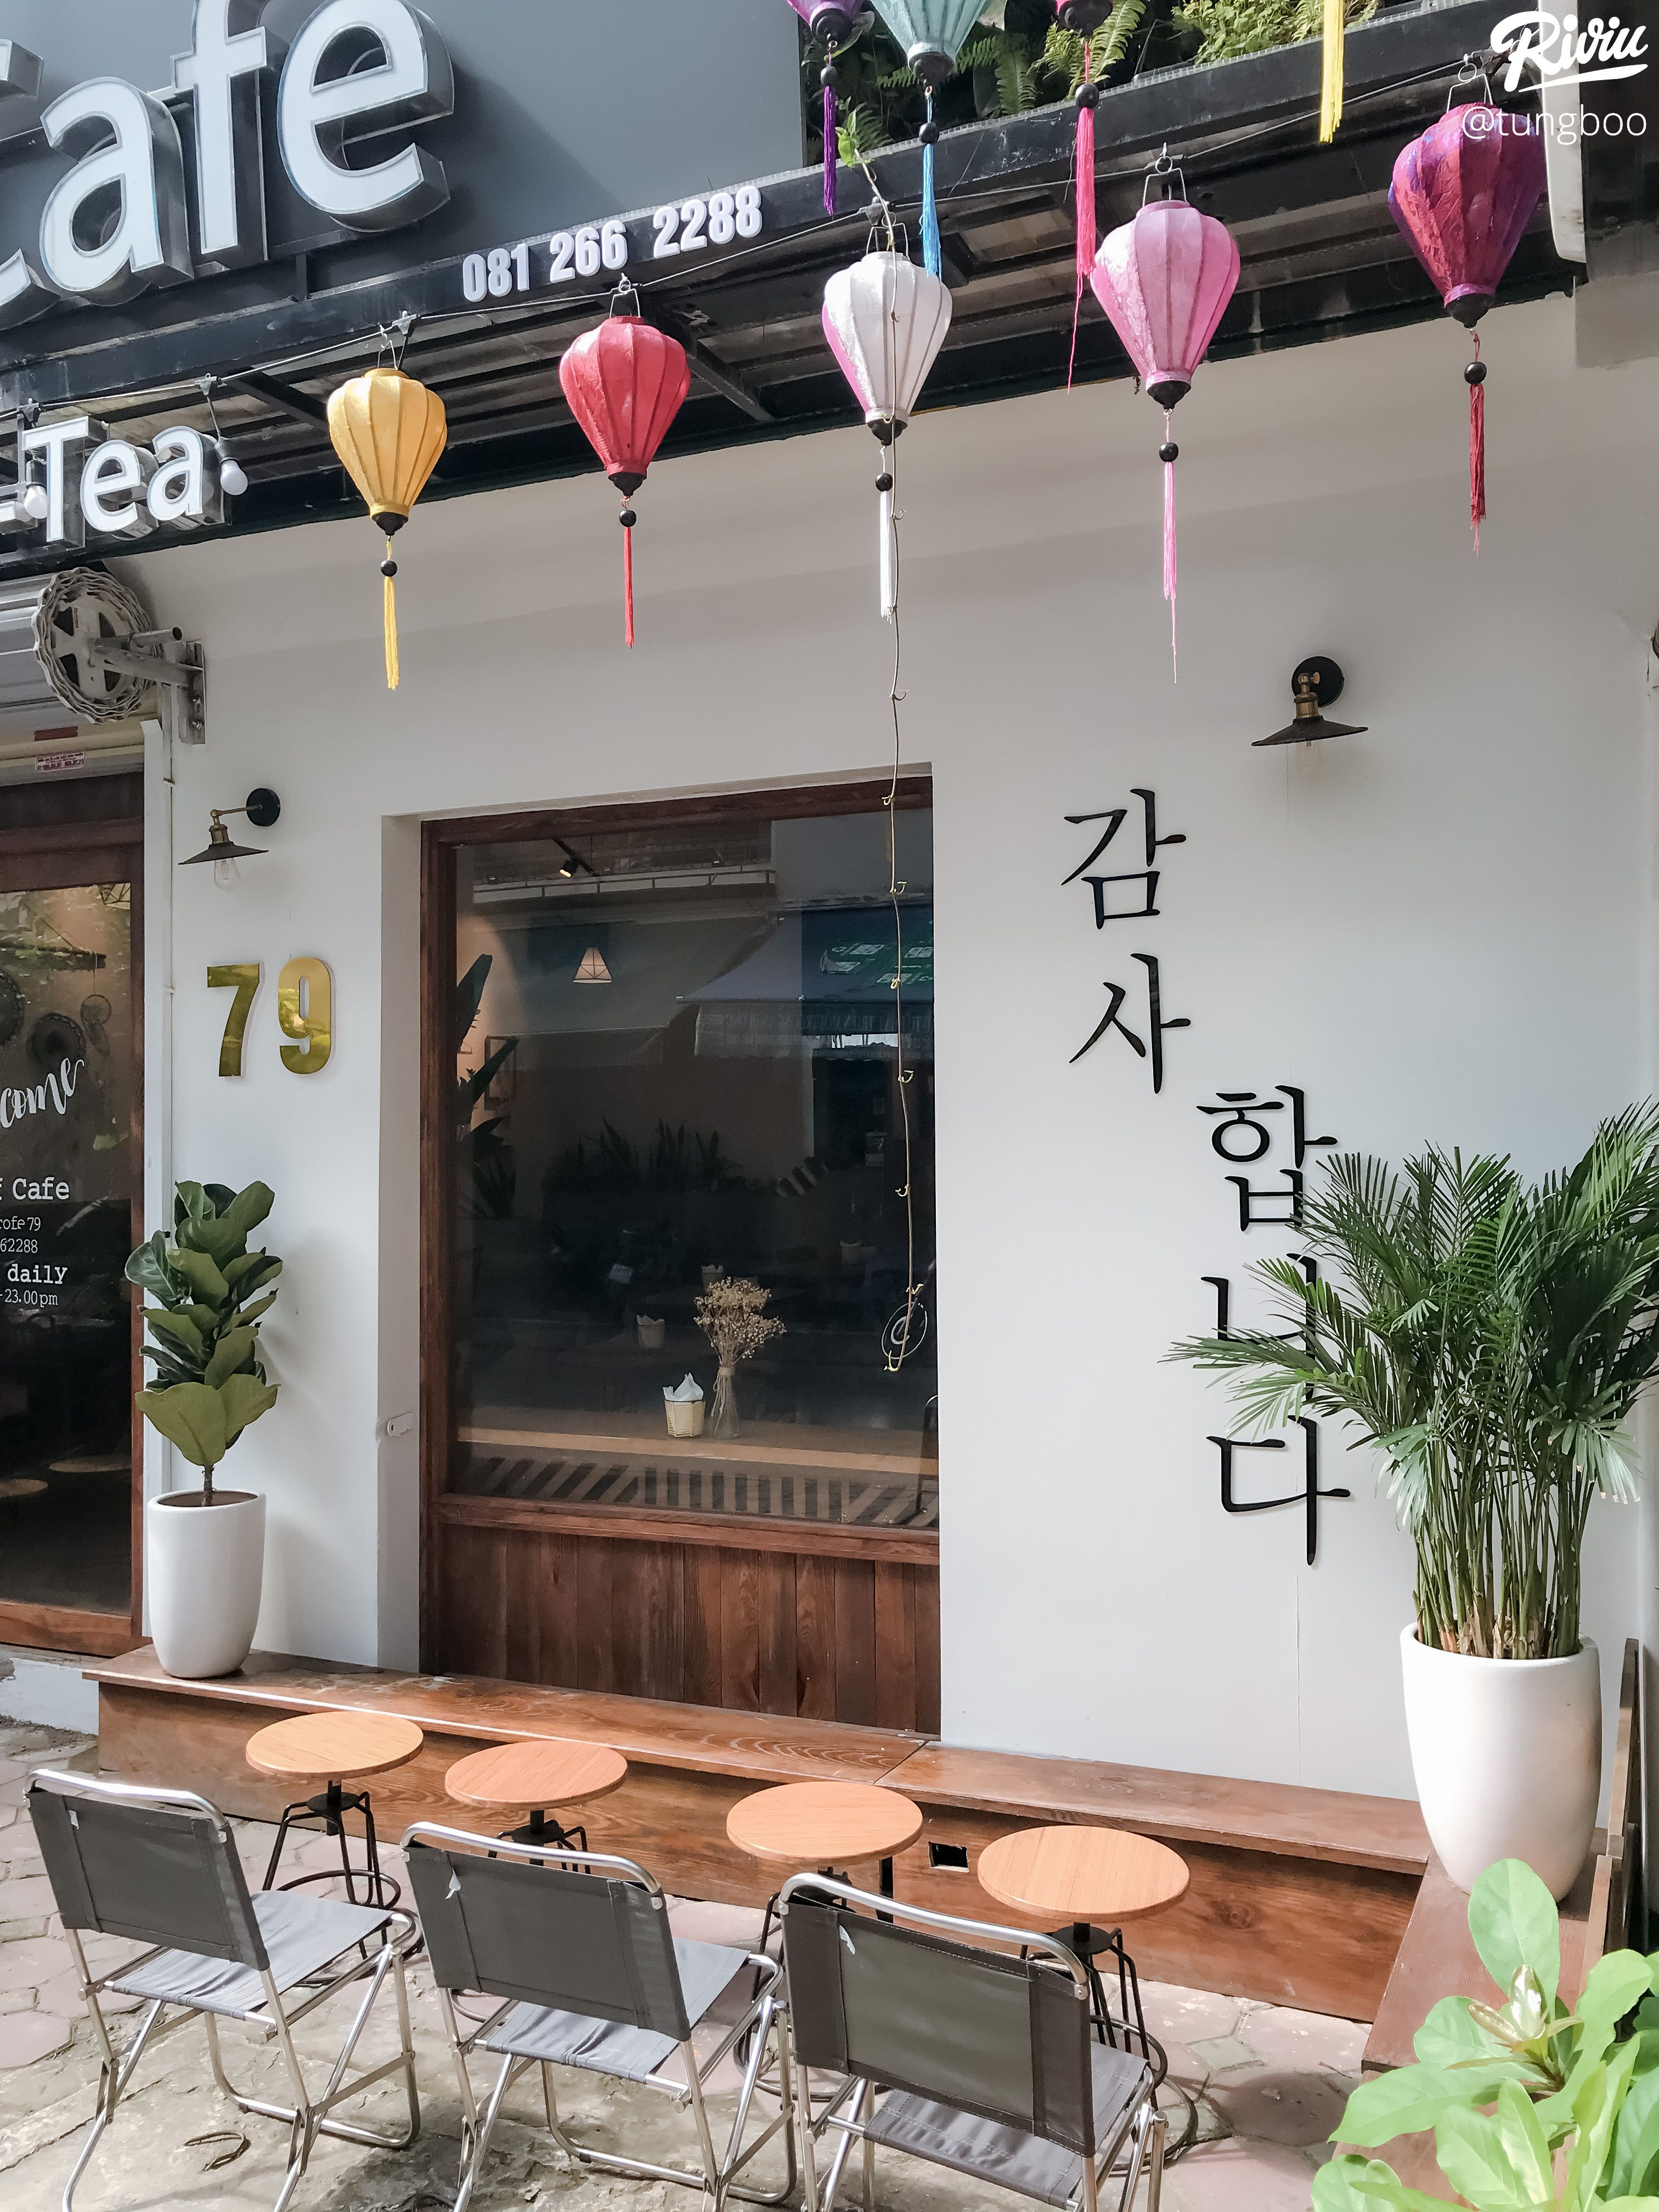 Tiệm cà phê Garden Hàn Quốc: Một góc xanh mát, tươi mới và đầy sức sống sẽ xuất hiện ngay trước mắt bạn khi xem hình ảnh tiệm cà phê Garden Hàn Quốc này. Hãy cùng đắm chìm trong không gian yên bình và thưởng thức hương vị cà phê đặc trưng của Hàn Quốc.